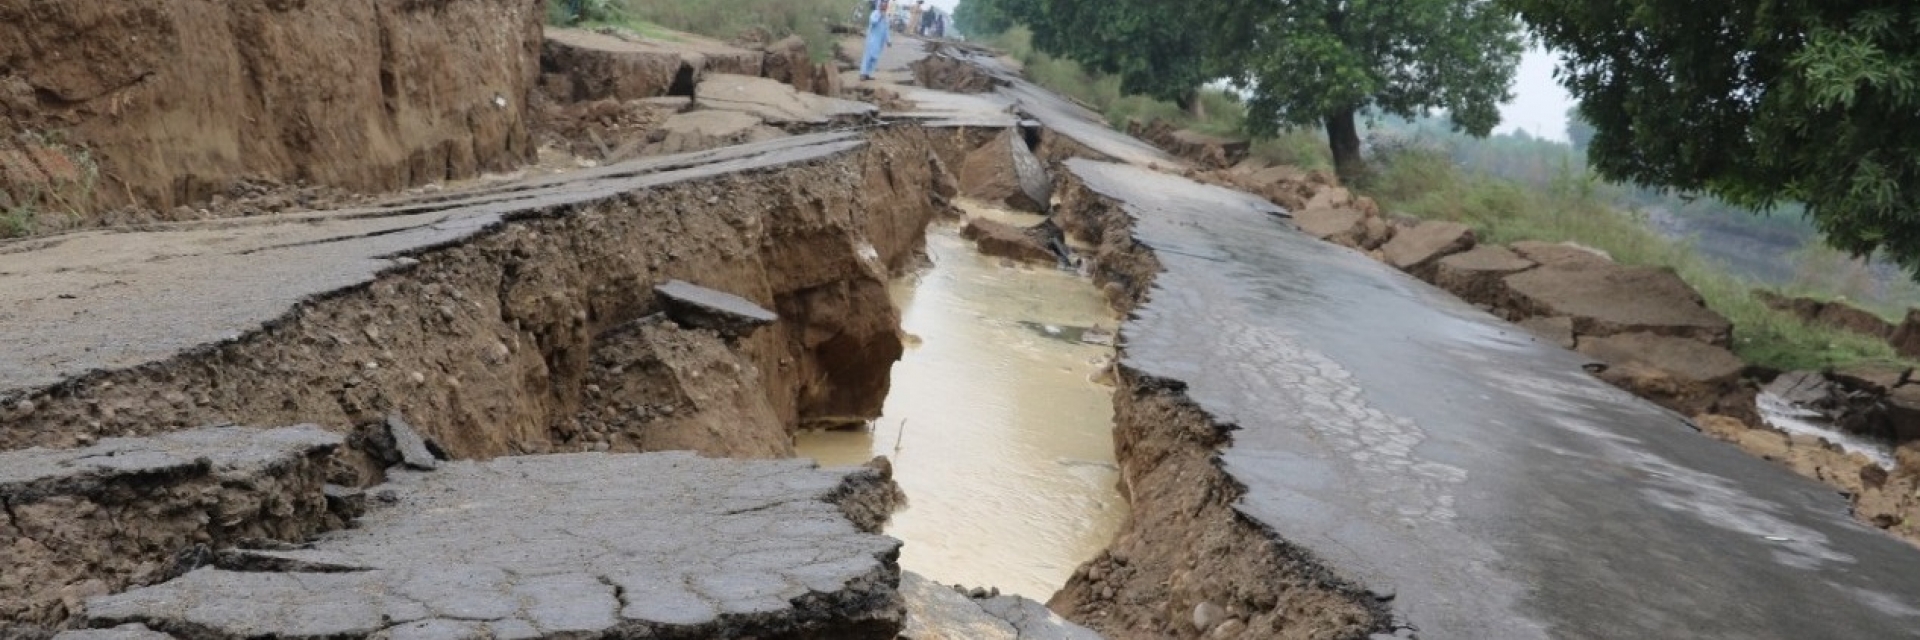 Une route endommagée par le séisme